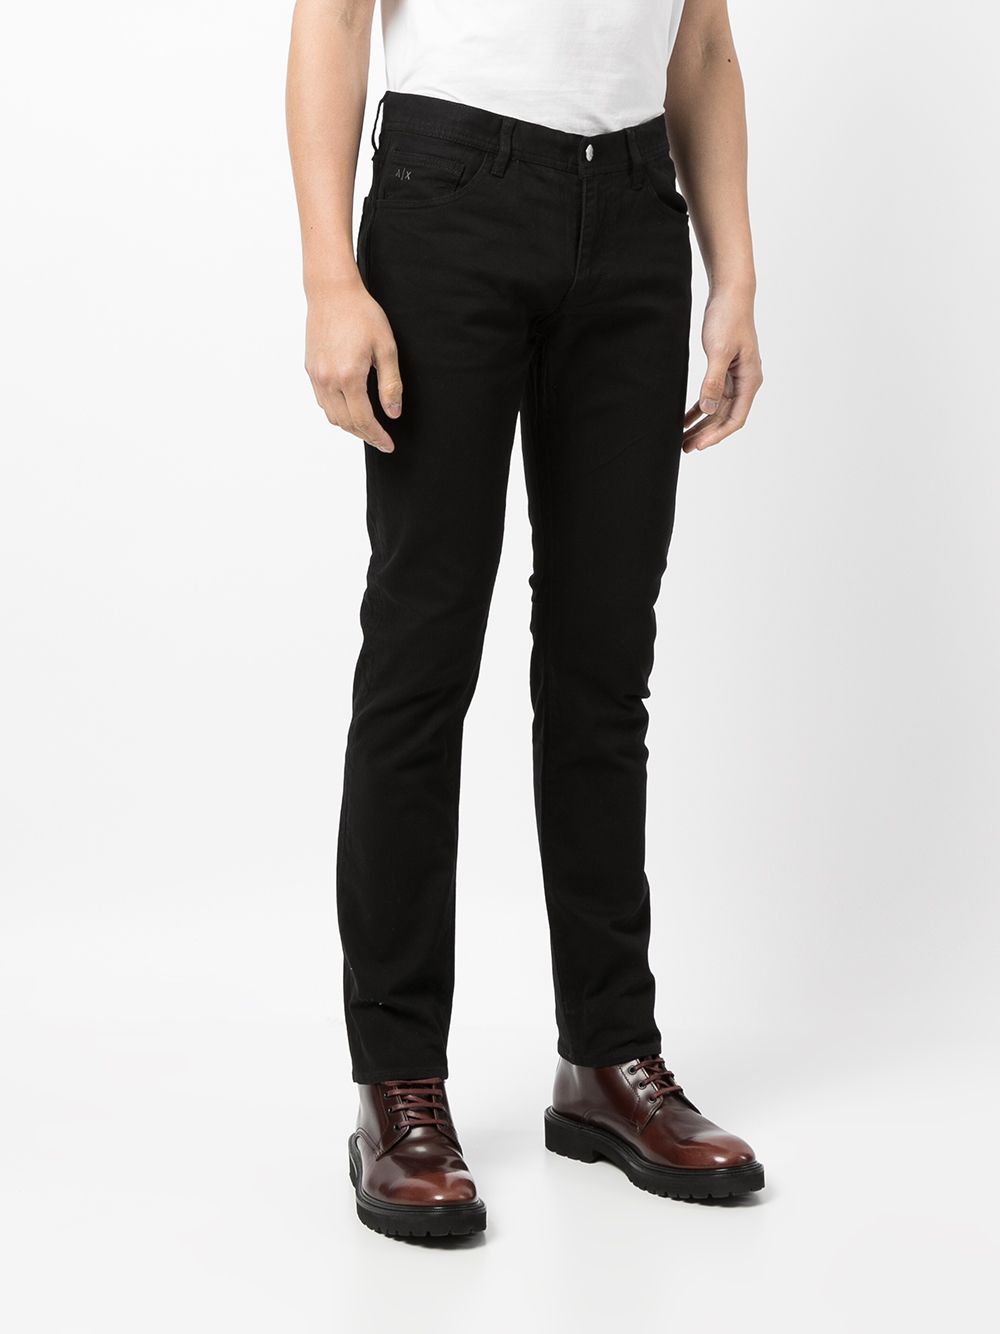 фото Armani exchange узкие джинсы с нашивкой-логотипом